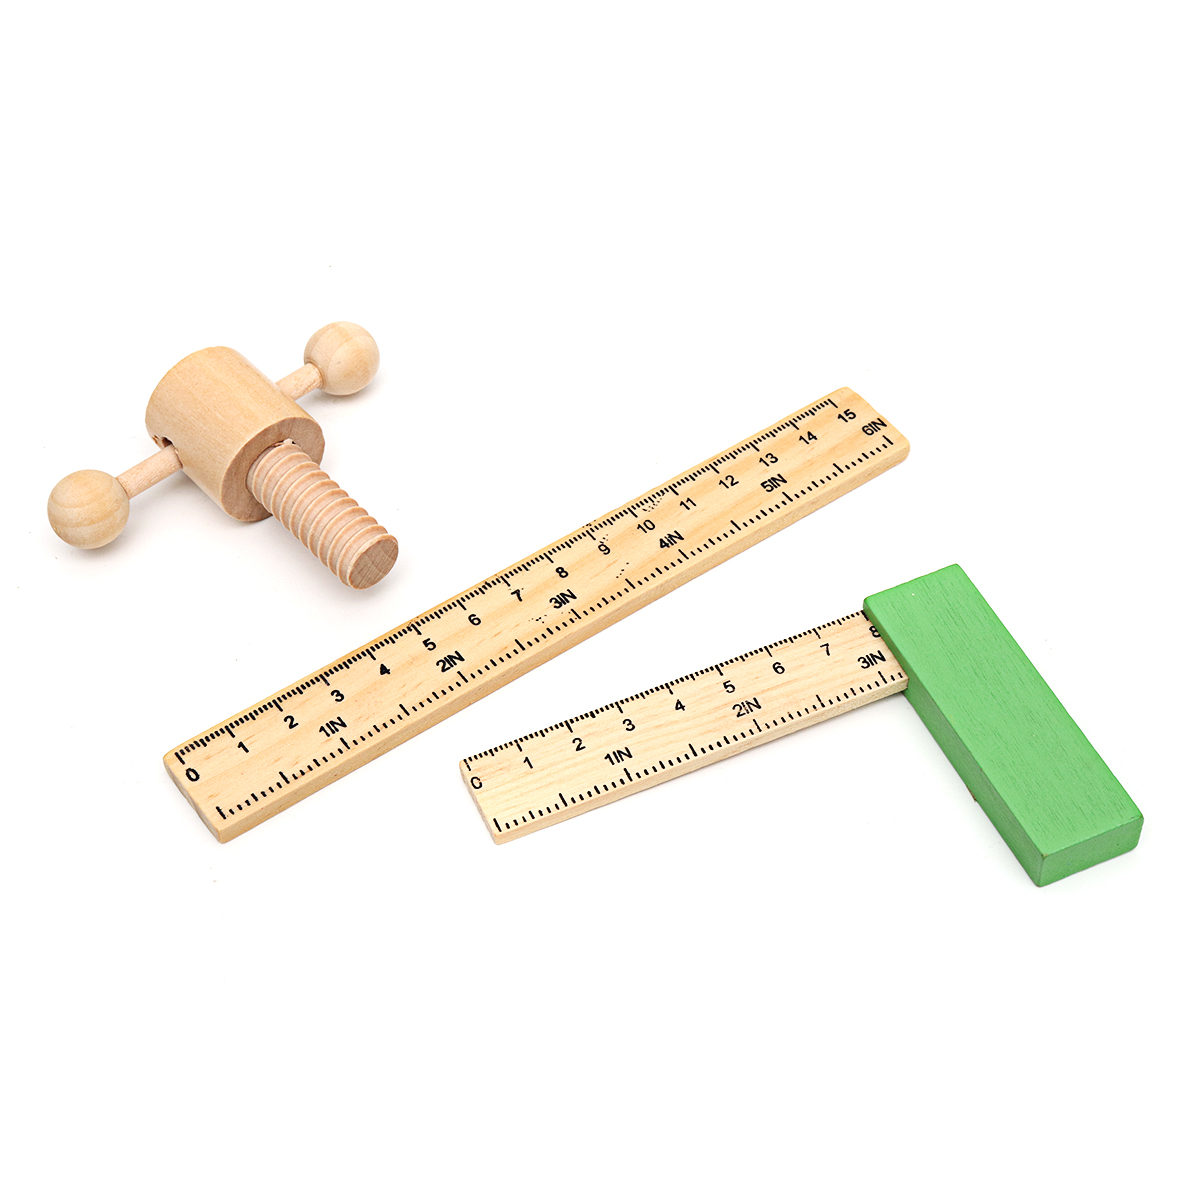 Simular caixa de ferramentas de reparo infantil Desmontagem de madeira, porca, brinquedo, kit de ferramentas de simulação Brinquedos de treinamento cerebral para crianças